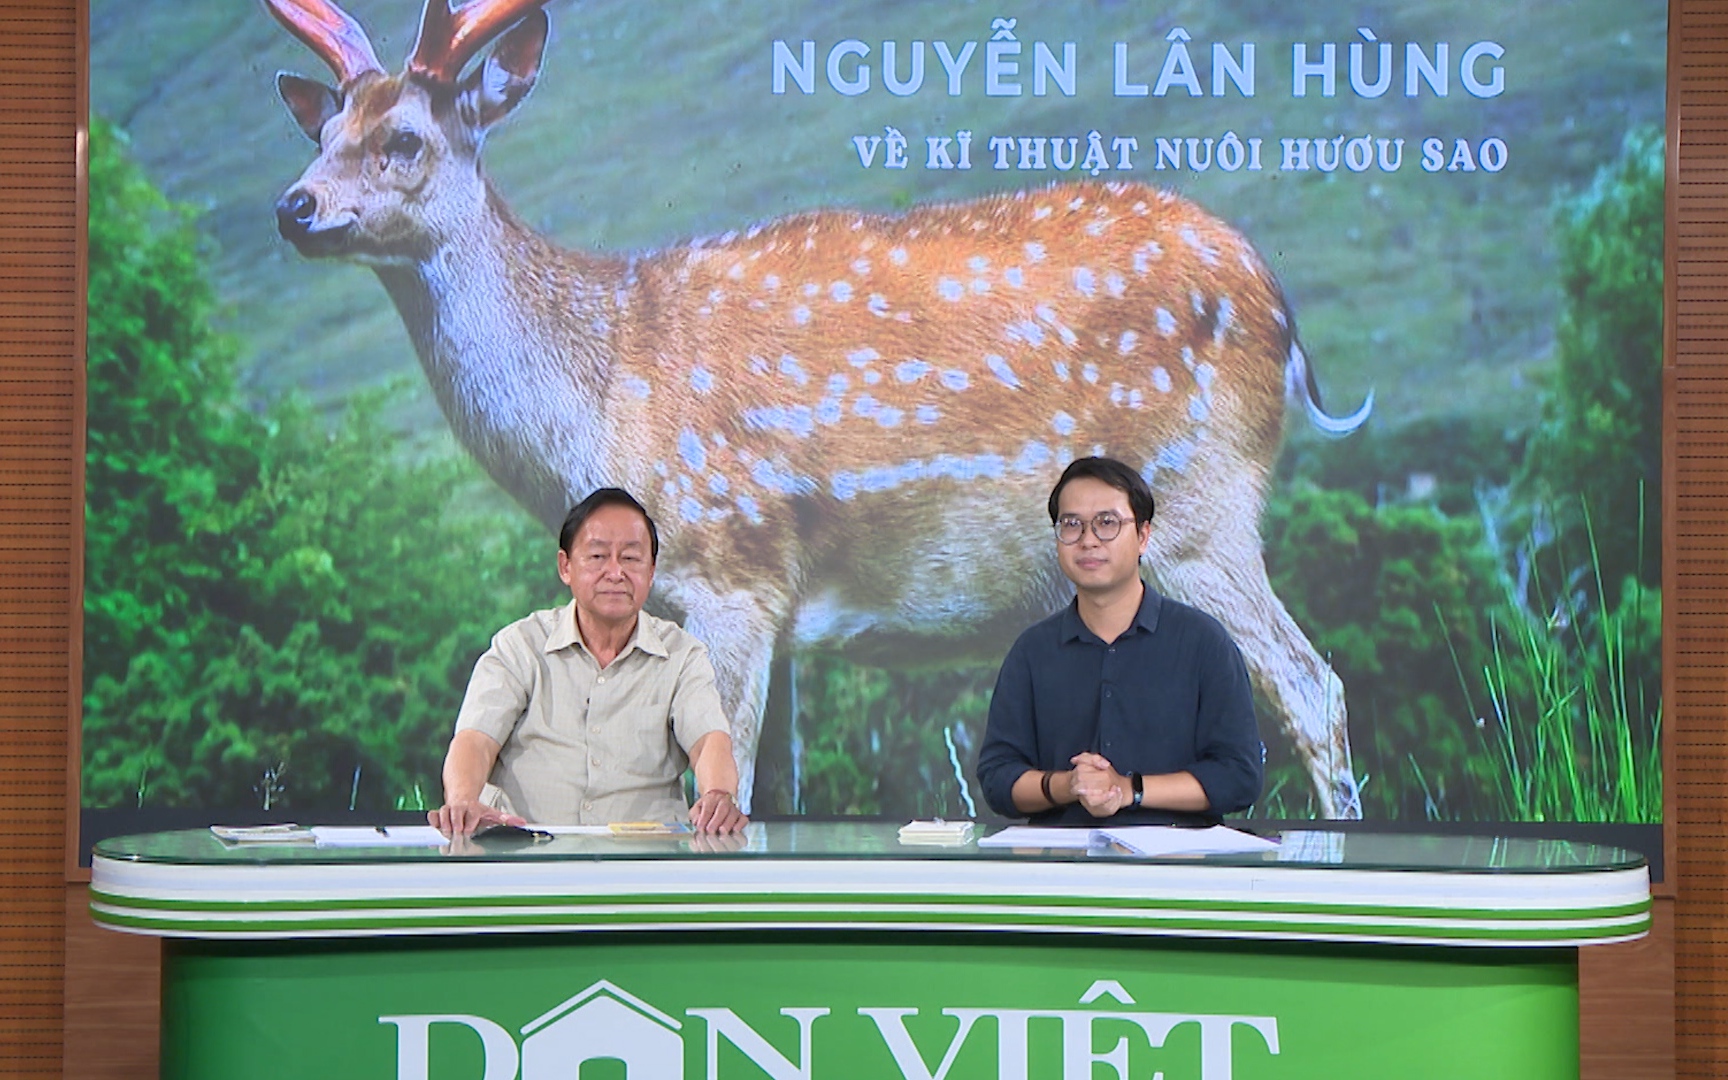 GÓC CHUYÊN GIA: Tìm hiểu kỹ thuật nuôi hươu lấy nhung cùng chuyên gia Nguyễn Lân Hùng